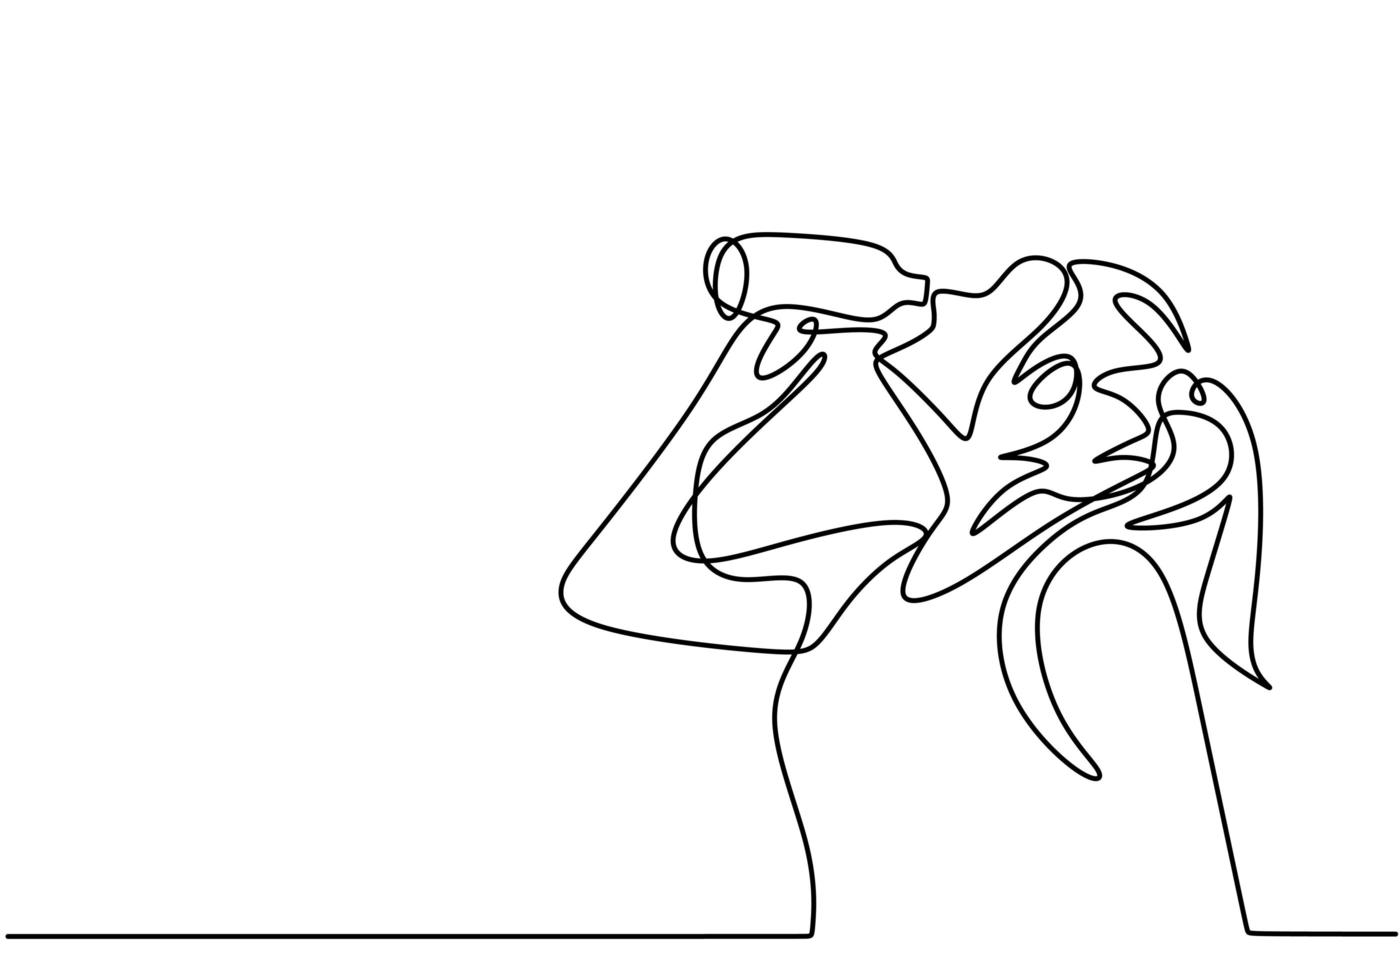 dibujo continuo de una línea, vector de niña bebiendo agua de una botella, mujer se siente fresca después del ejercicio deportivo y trote. diseño minimalista con sencillez dibujada a mano.